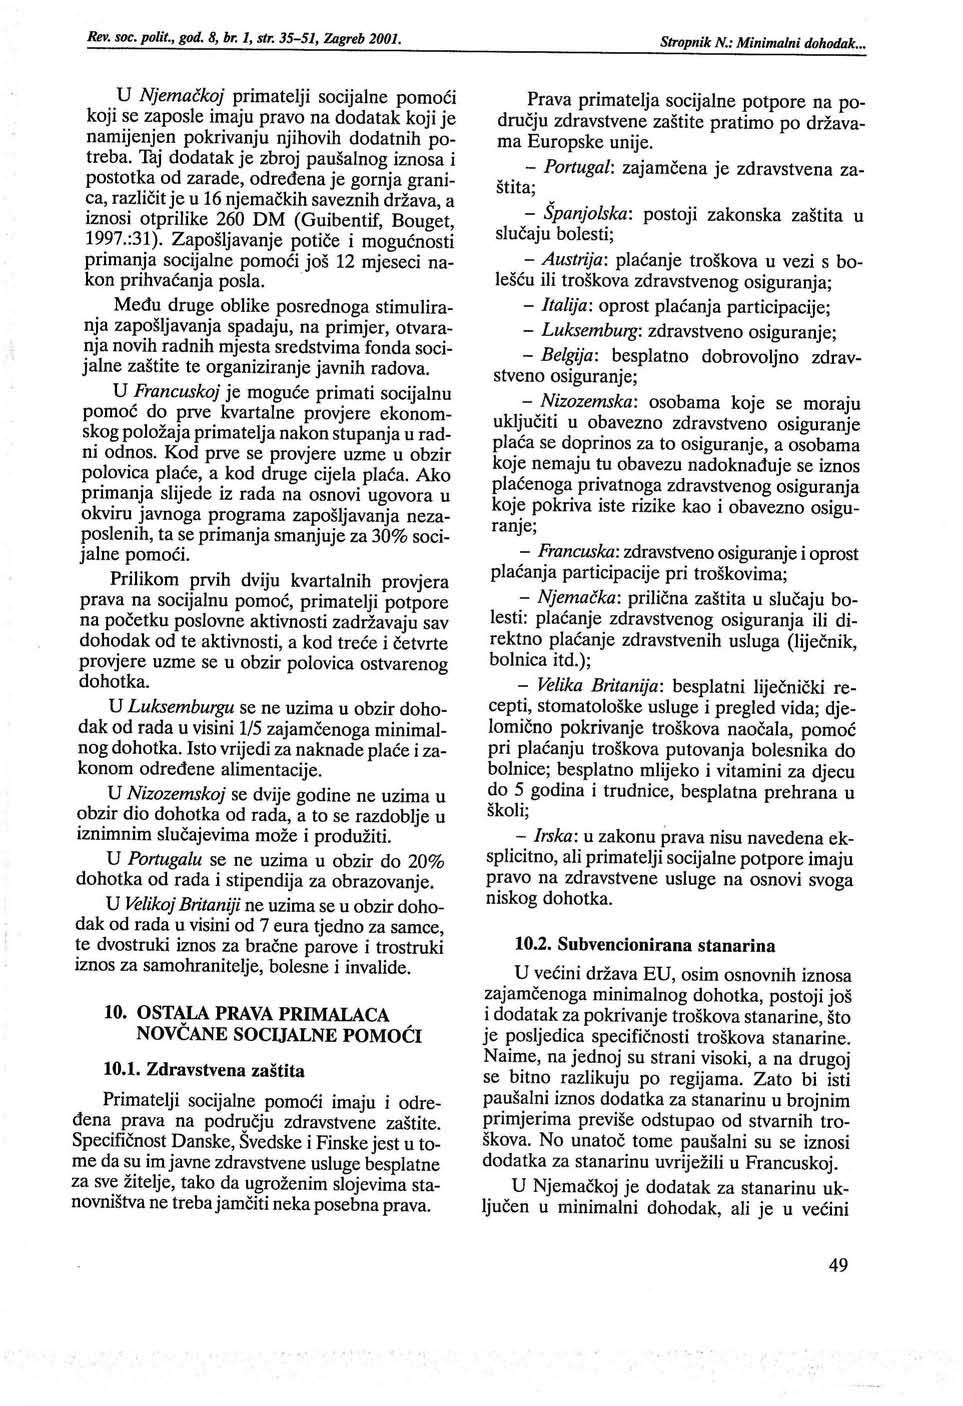 Rev. soc. polit., god. 8, br. 1, str. 35-51, Zagreb 2001. Stropnik N.: Minimalni dohodak.